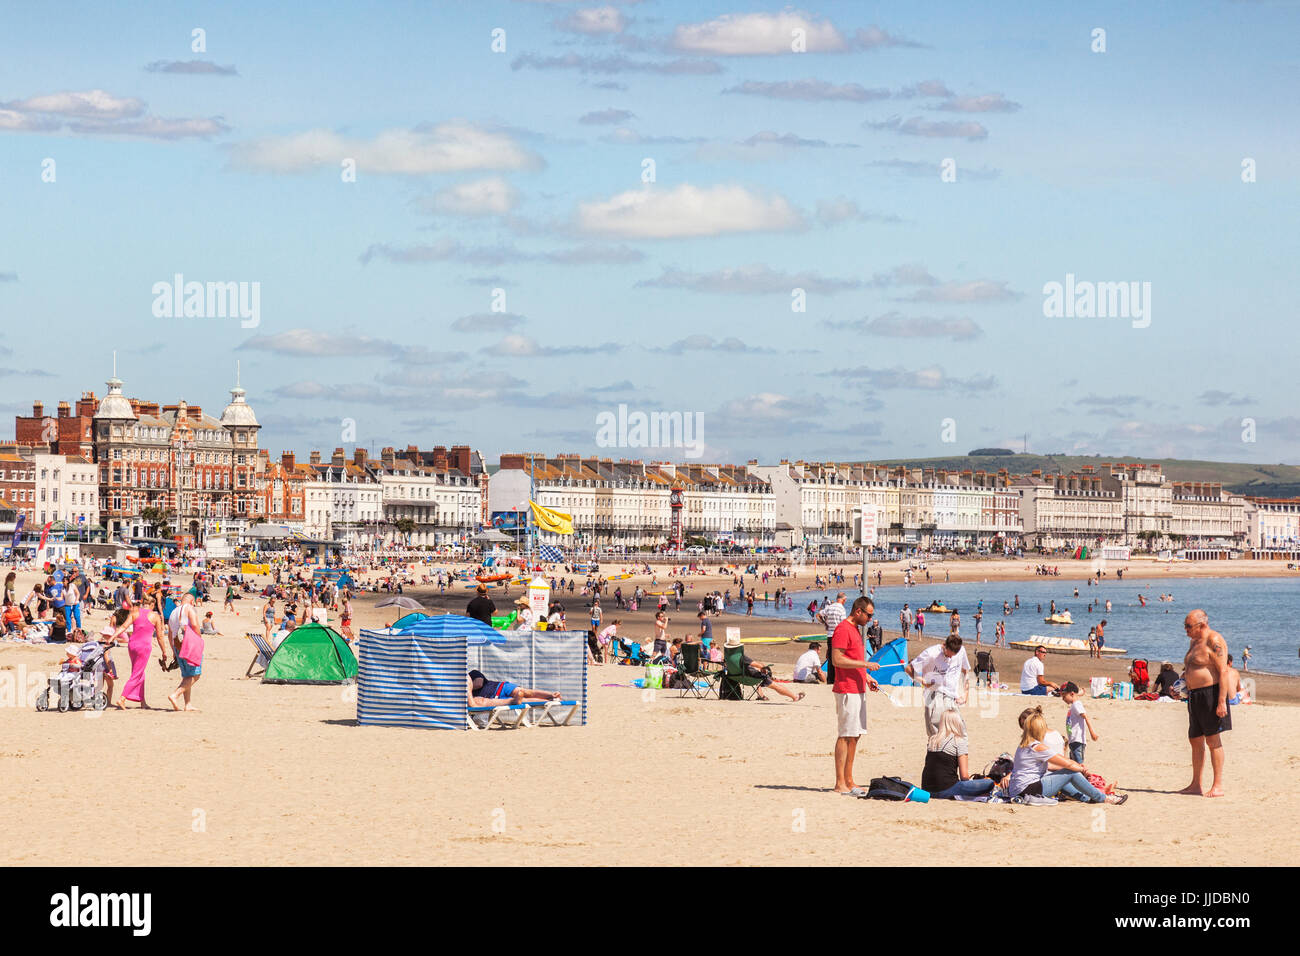 2 Juillet 2017 : Weymouth, Dorset, England, UK - Les gens occupés à bronzer sur la plage sur une chaude journée d'été. Banque D'Images